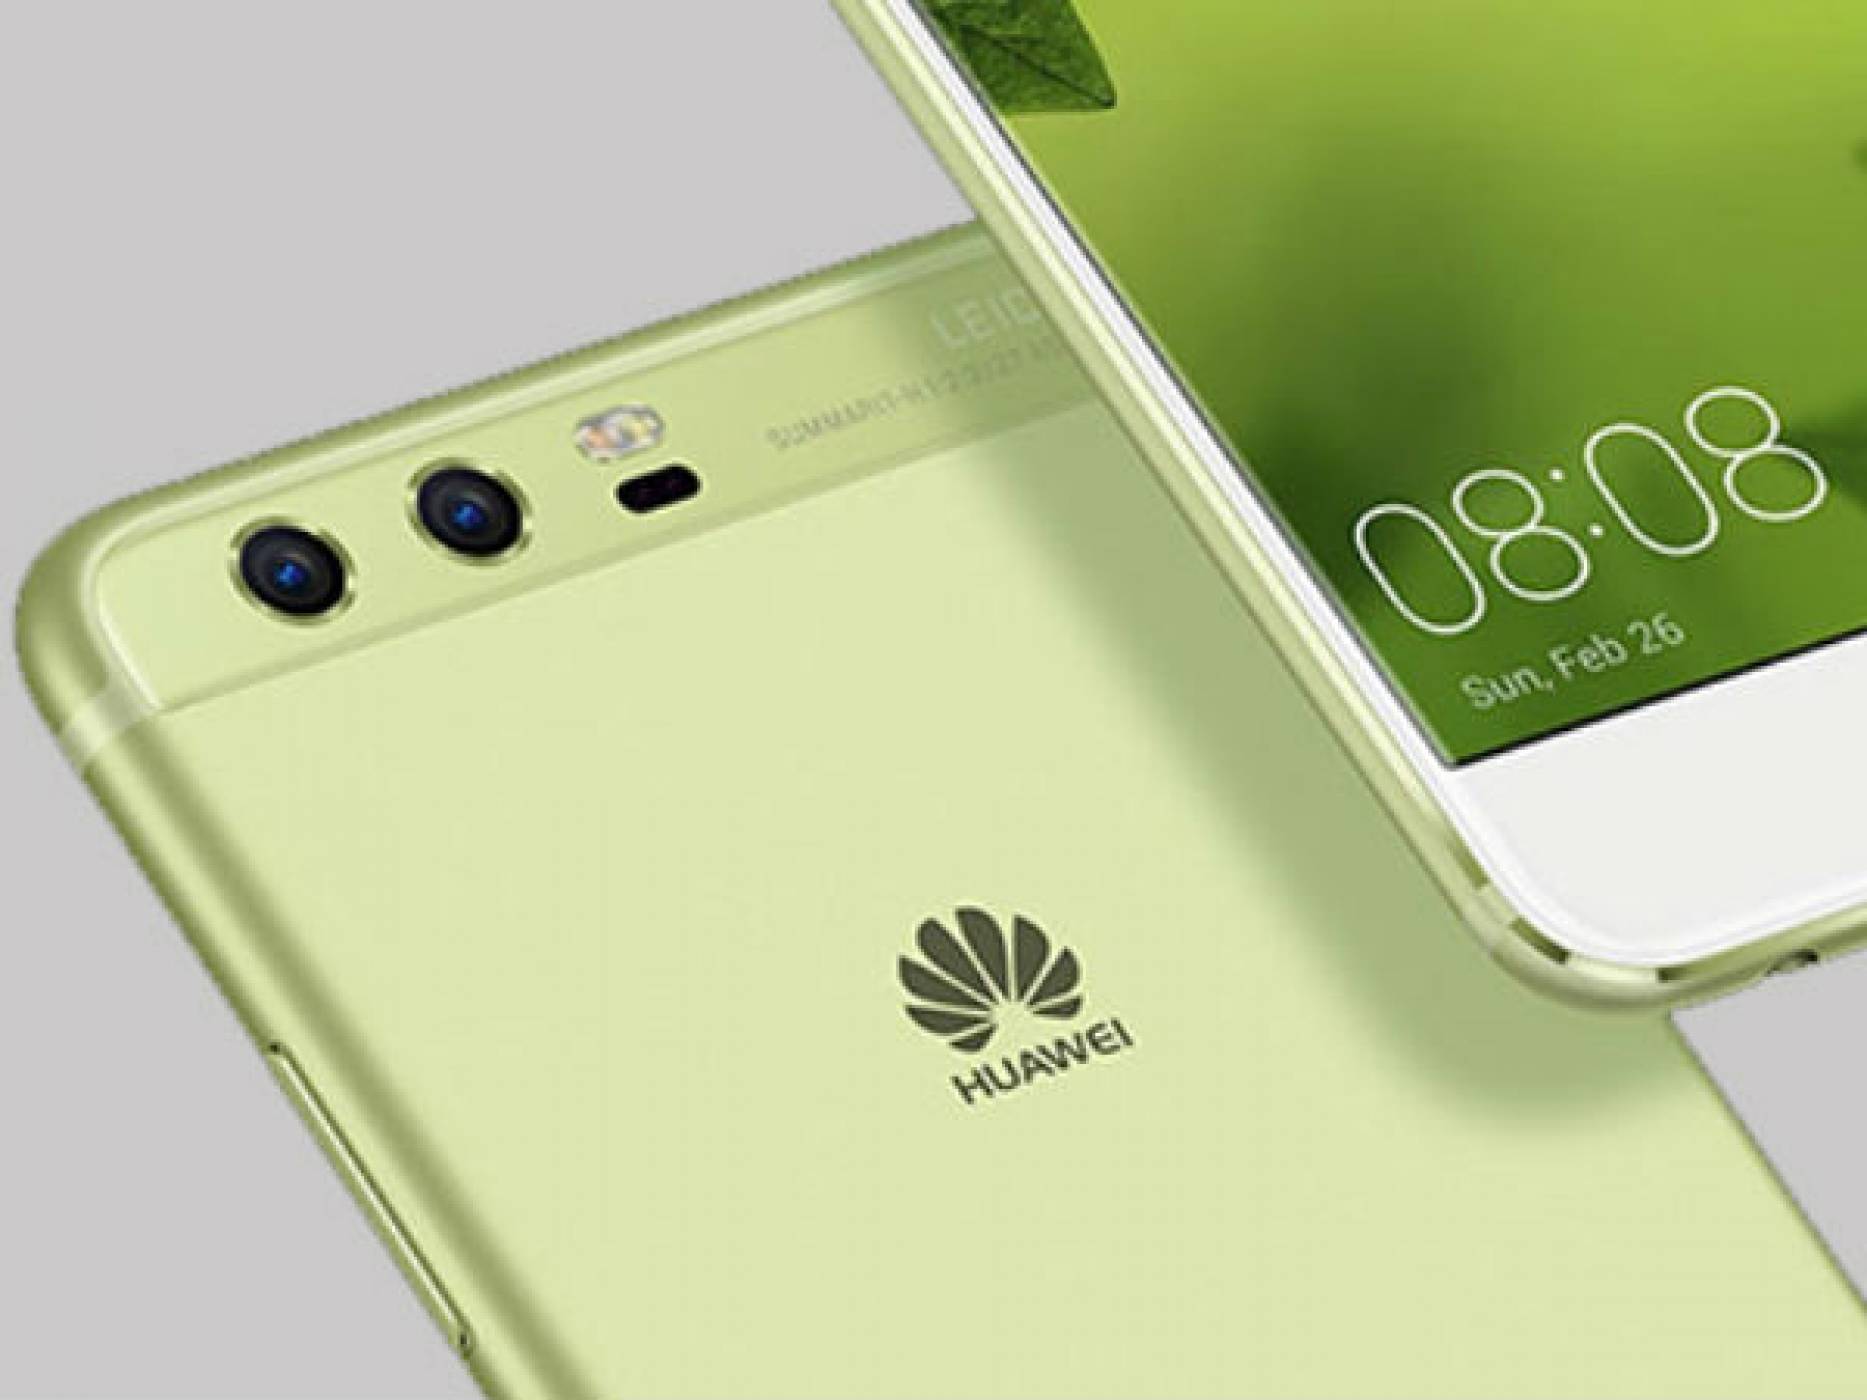 Mate 10 може да бъде първият телефон на Huawei с Android 8.0 Oreo